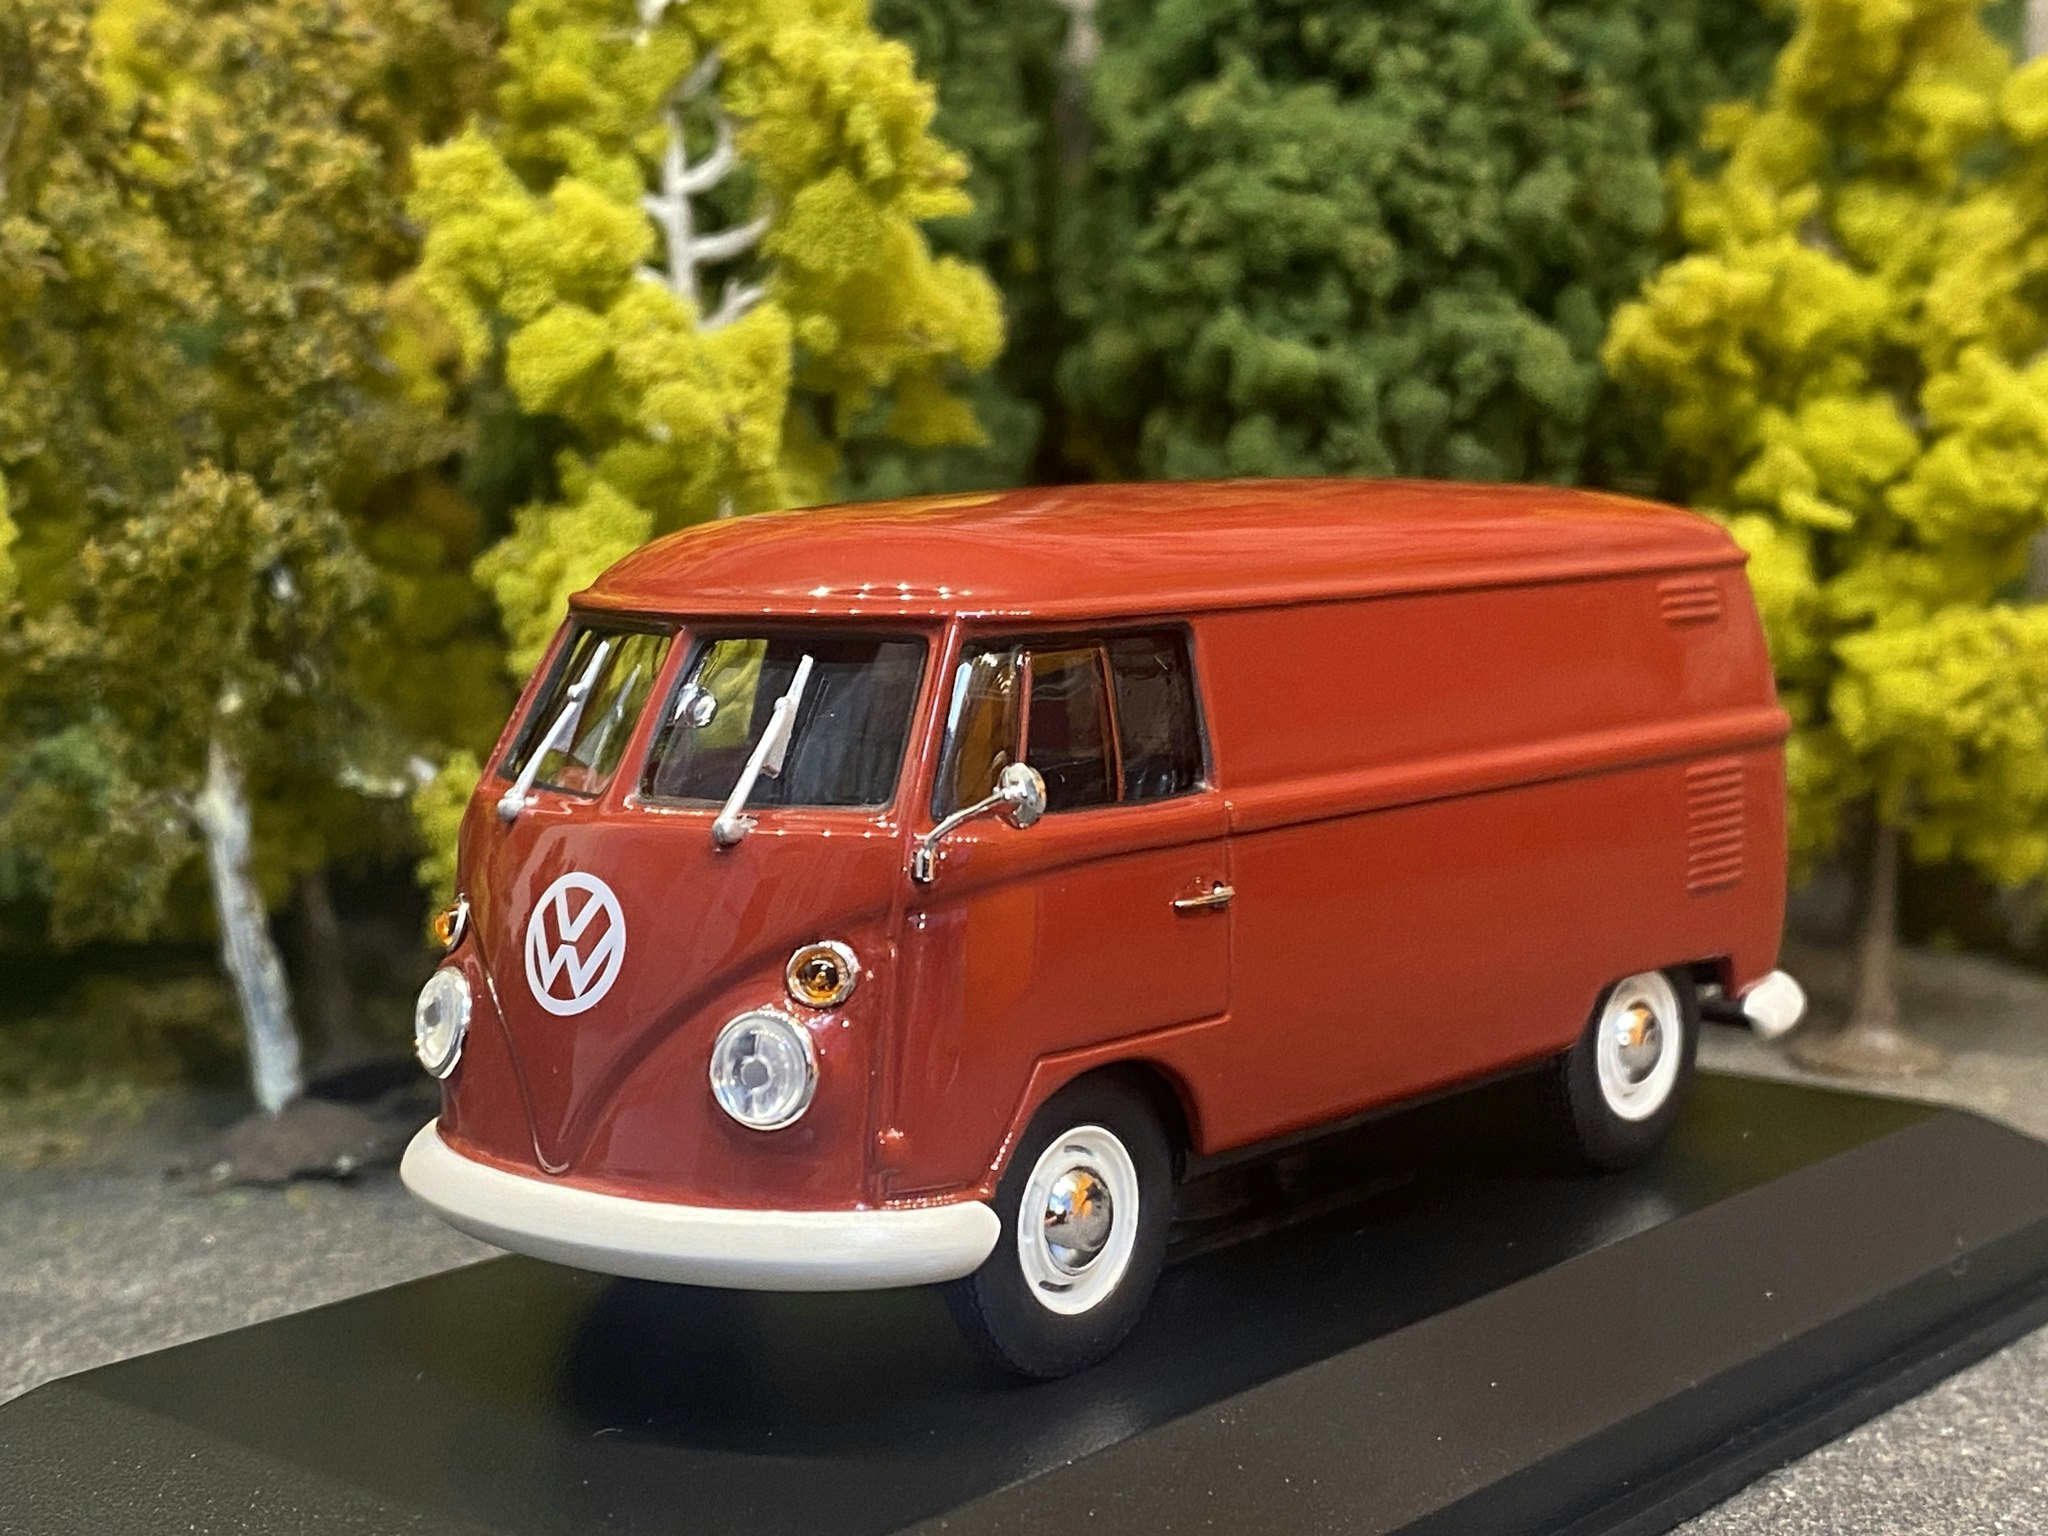 Skala 1/43 - Volkswagen T1 Kastenwagen Delivery Van 1963, Red, fr Maxichamps